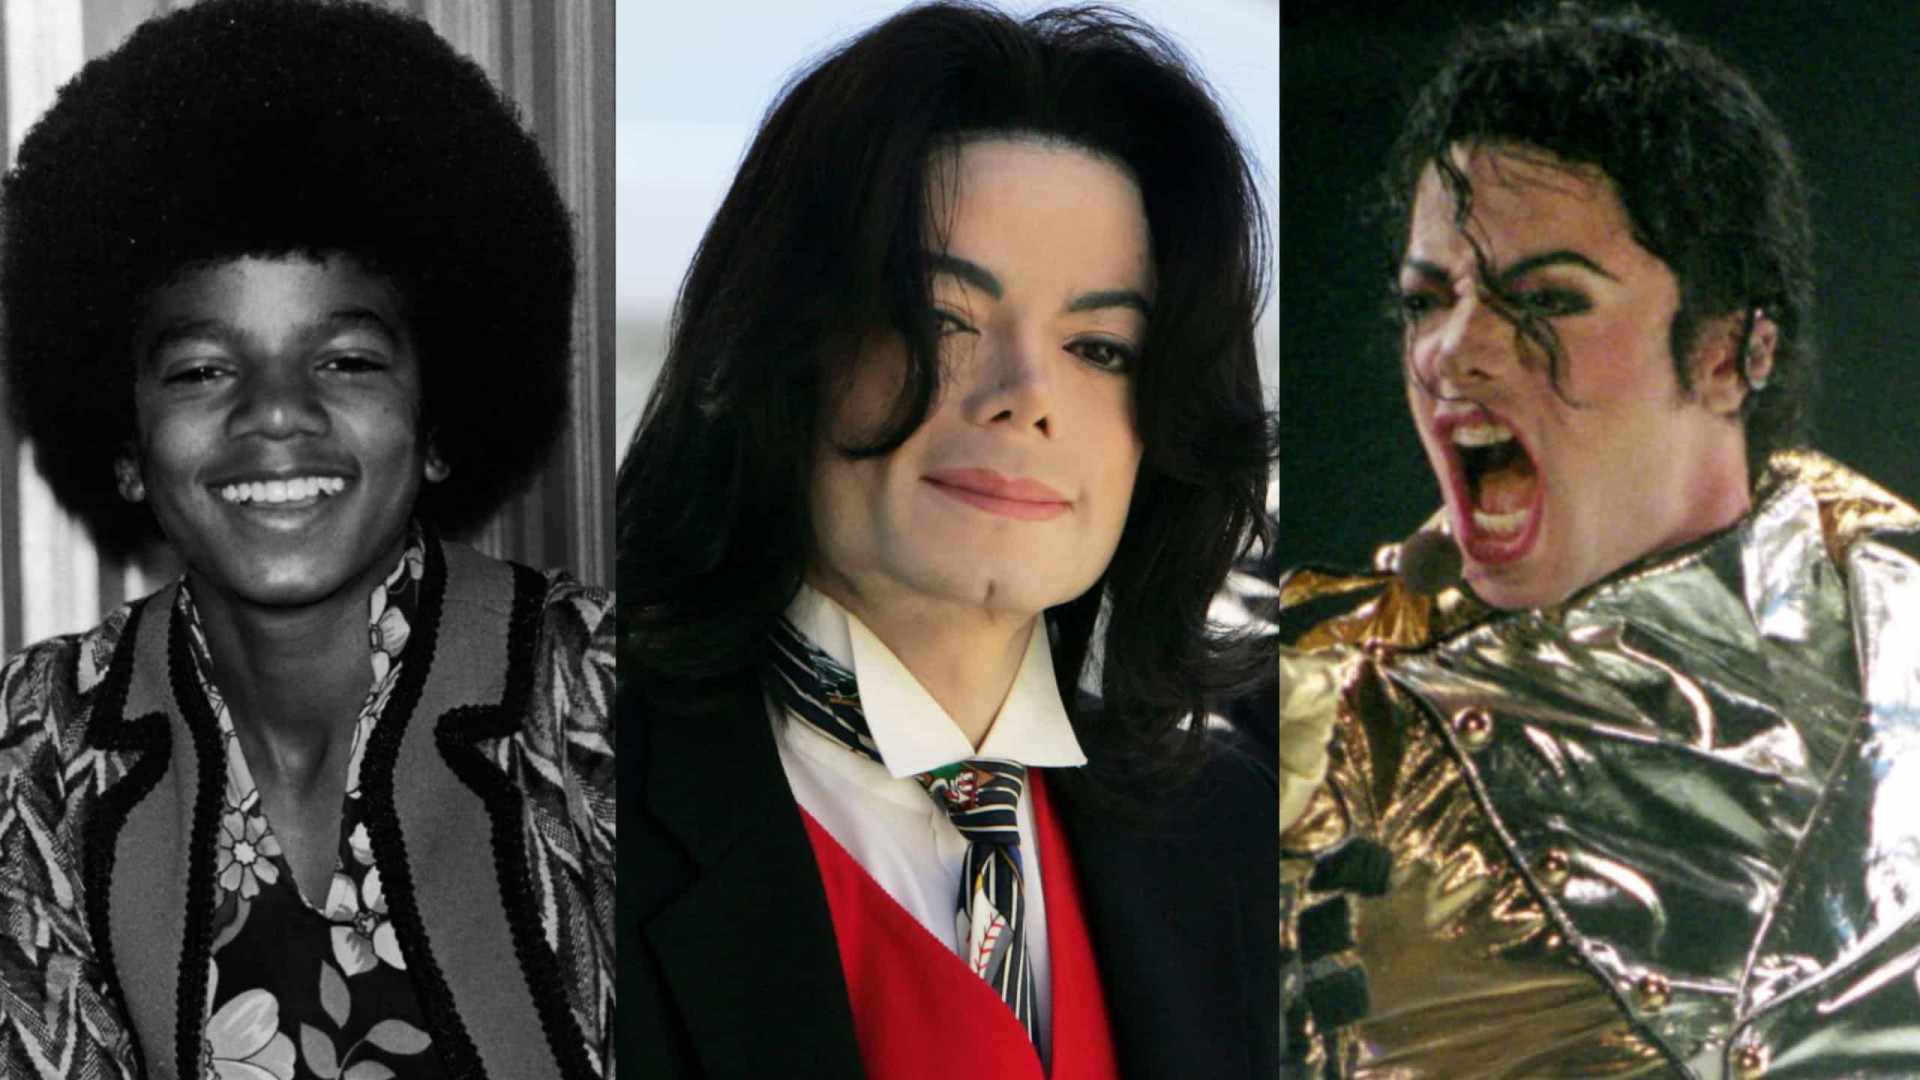 Veja fatos curiosos sobre Michael Jackson, que faria 60 anos em 2018